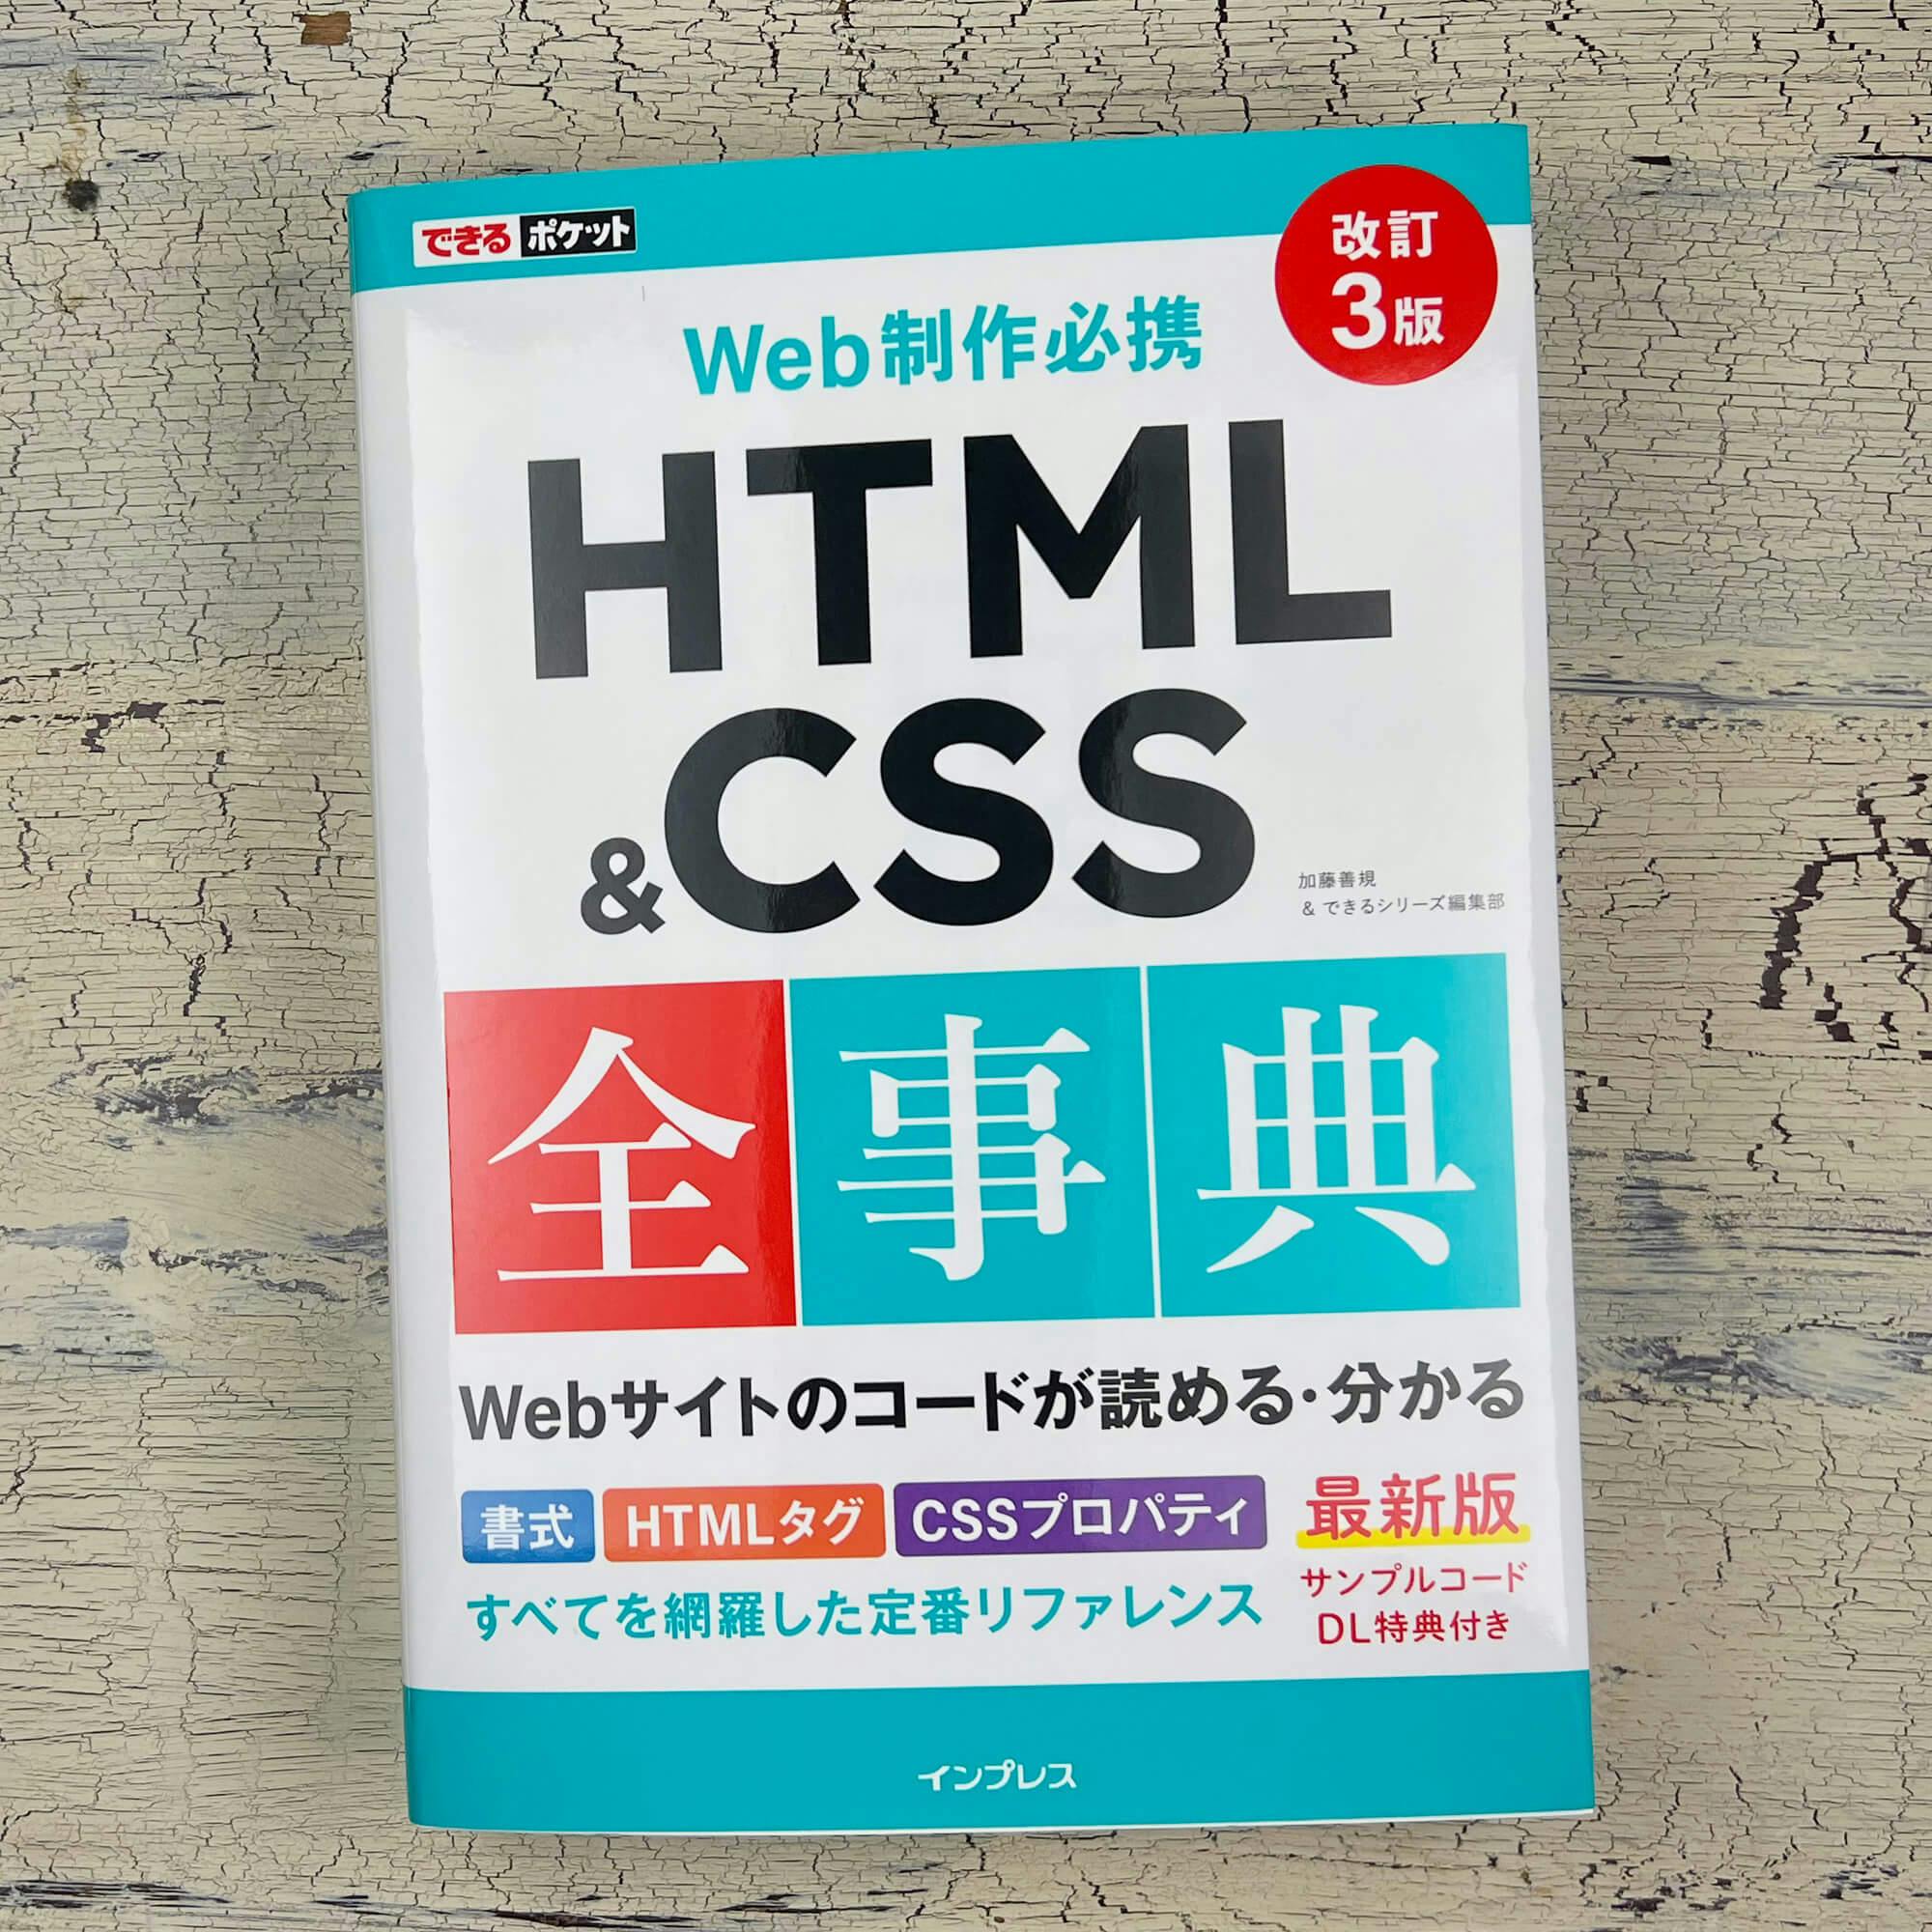 「できるポケット HTML&CSS 全事典 改訂 3 版」書影